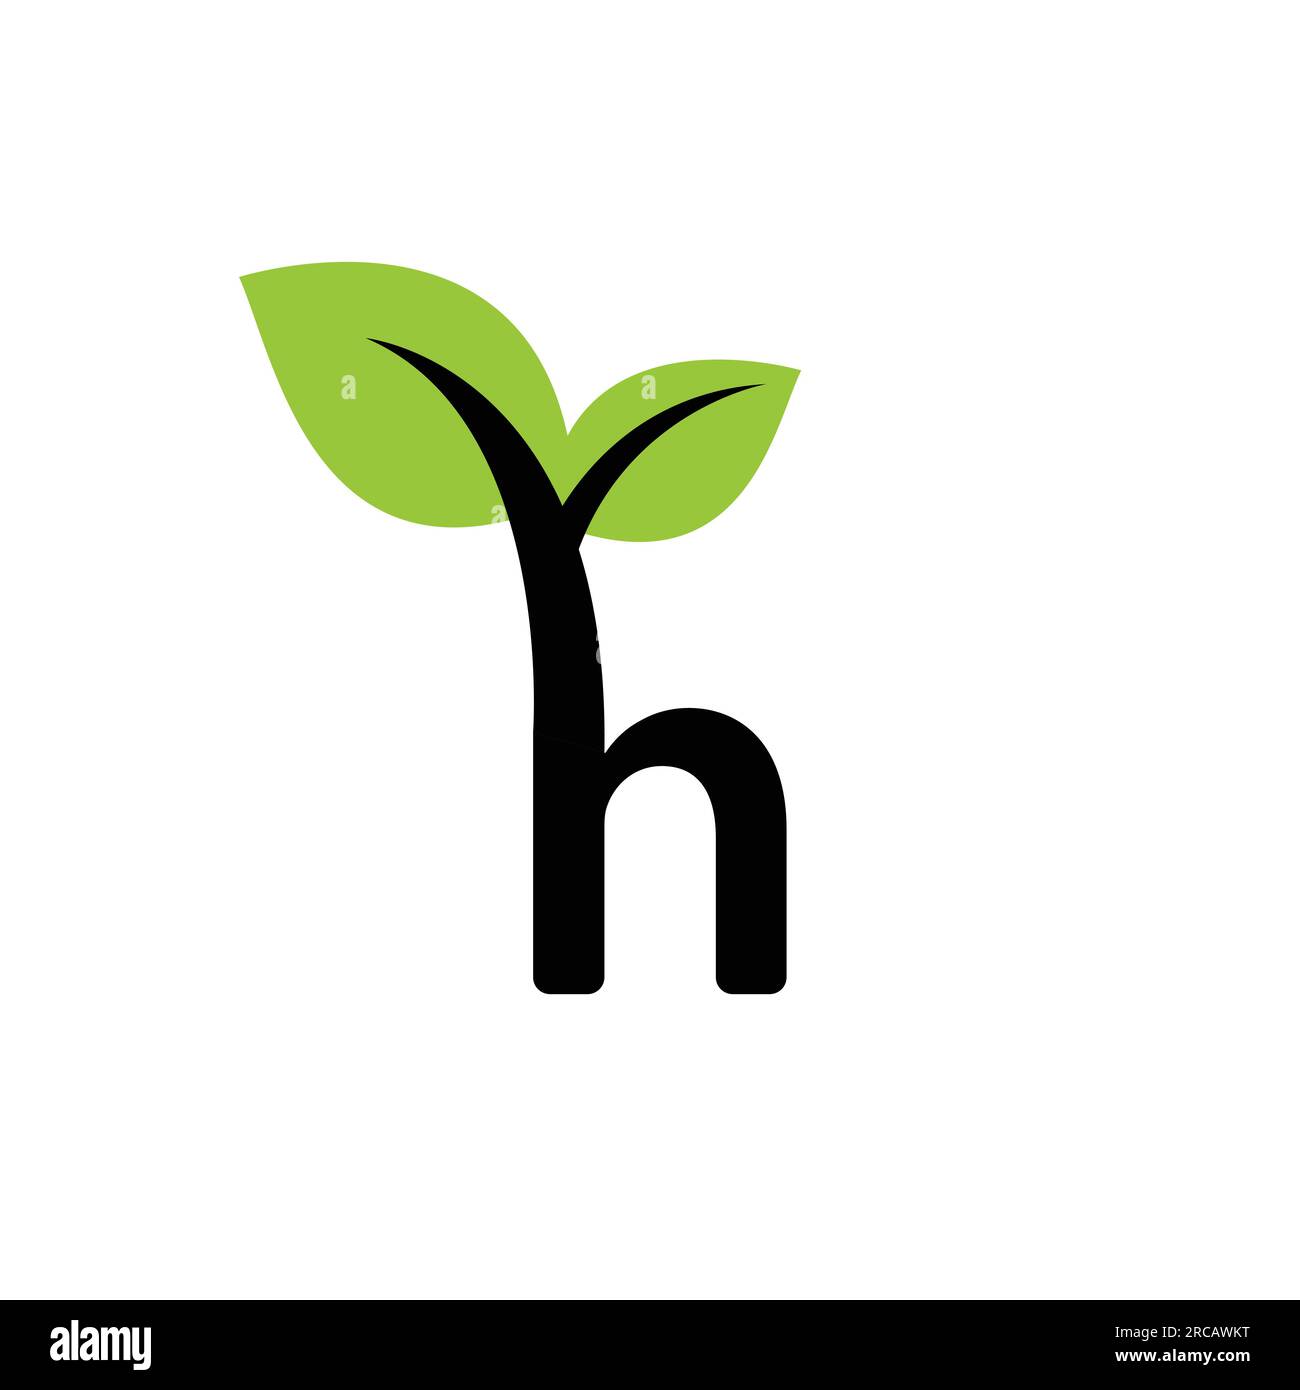 Lettera iniziale H immagine vettoriale logo ambiente foglia naturale. Foglia verde delle iniziali moderne per loghi naturali Illustrazione Vettoriale